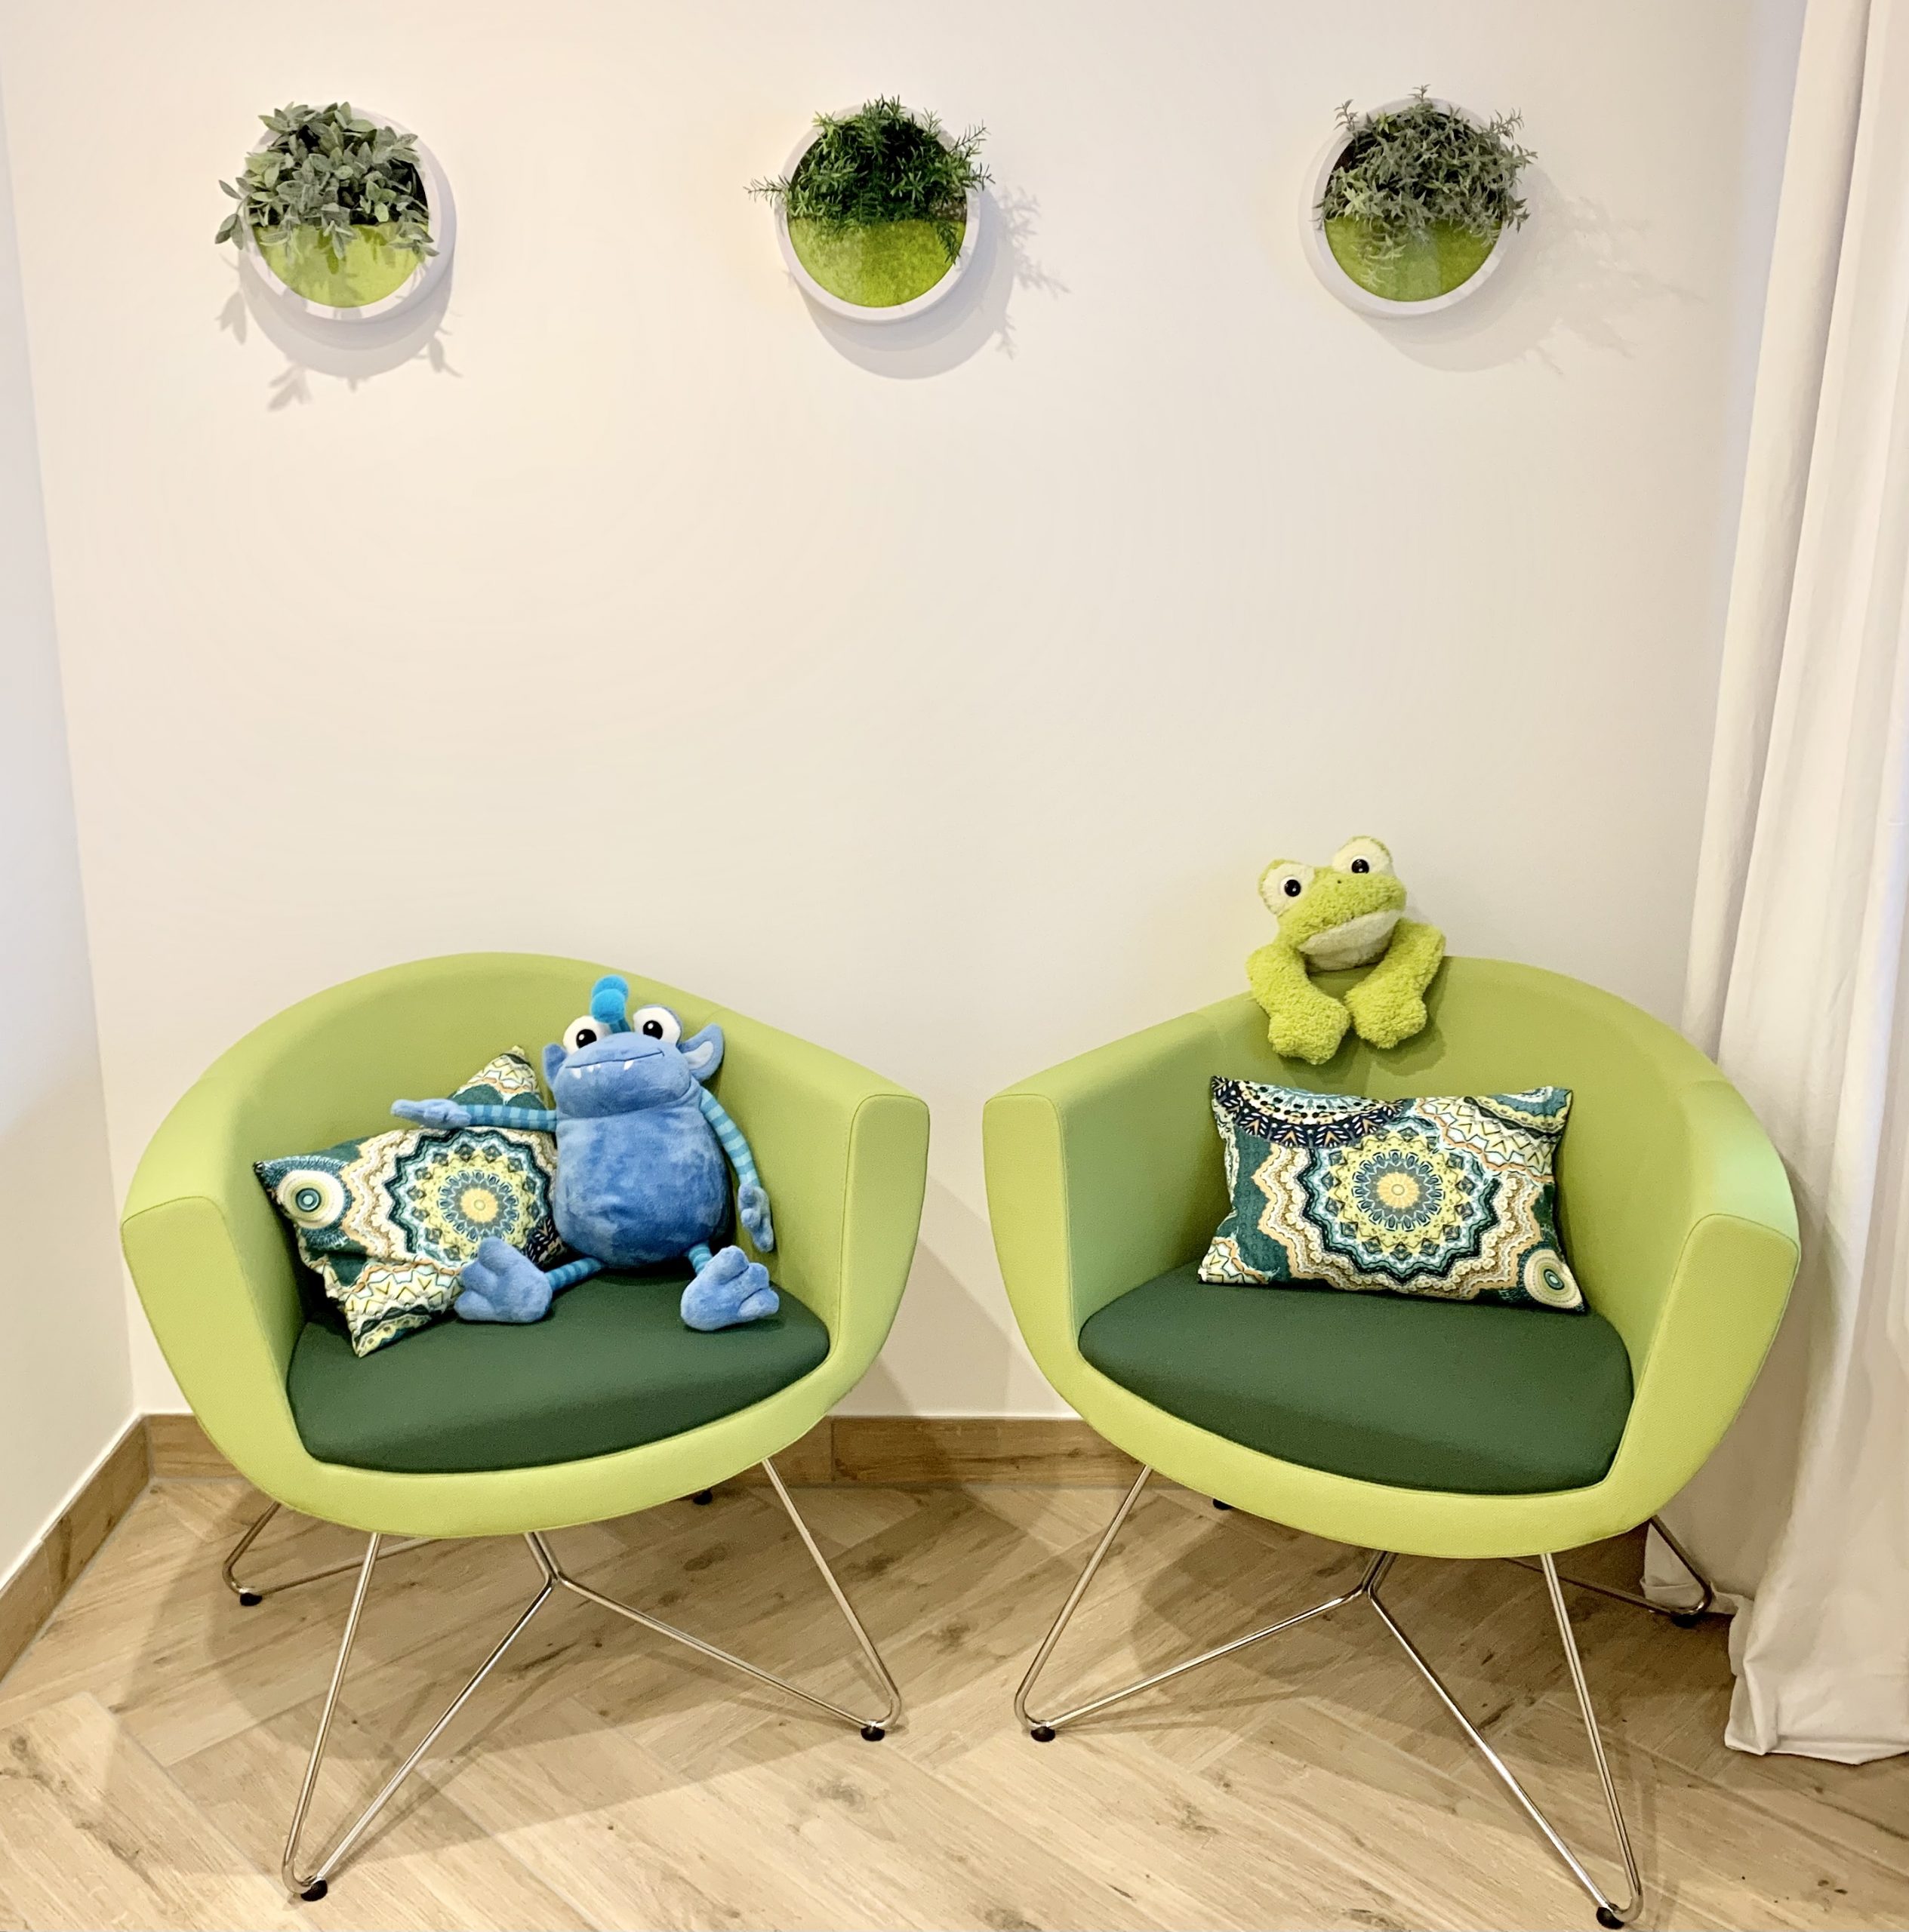 Zwei Plüschtiere sitzen auf grünen Sesseln.